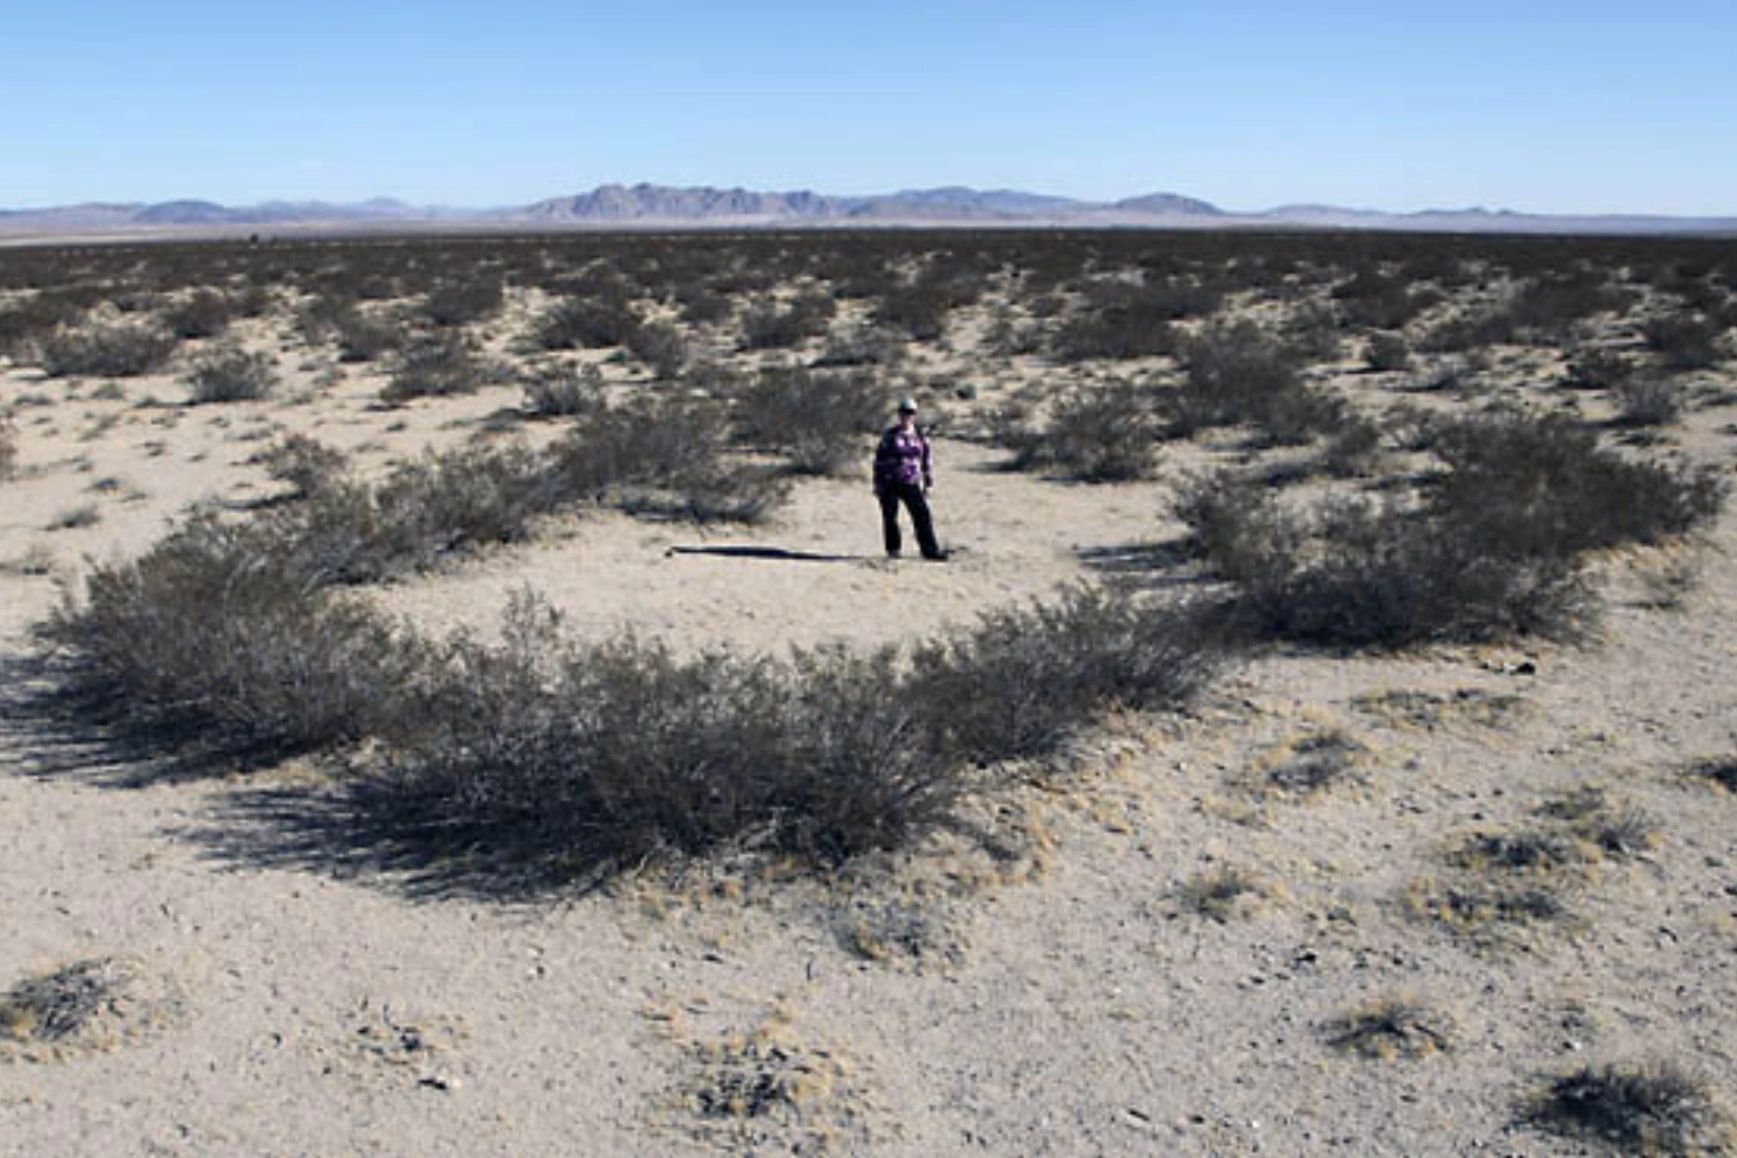 creosote bush in desert